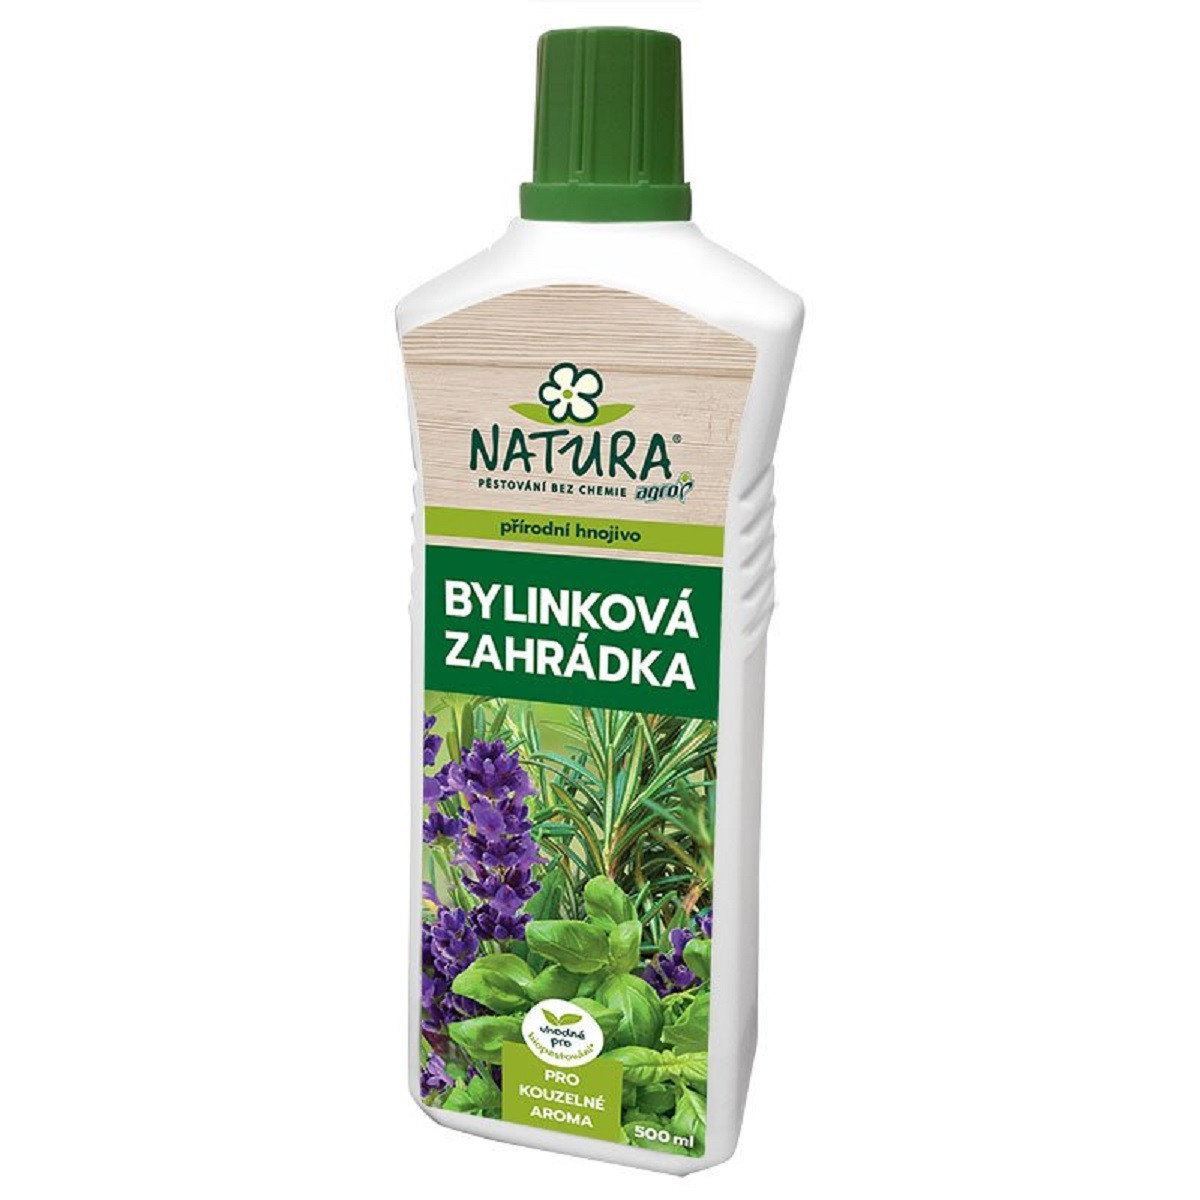 Hnojivo bylinková zahrádka - Natura - hnojivo - 500 ml